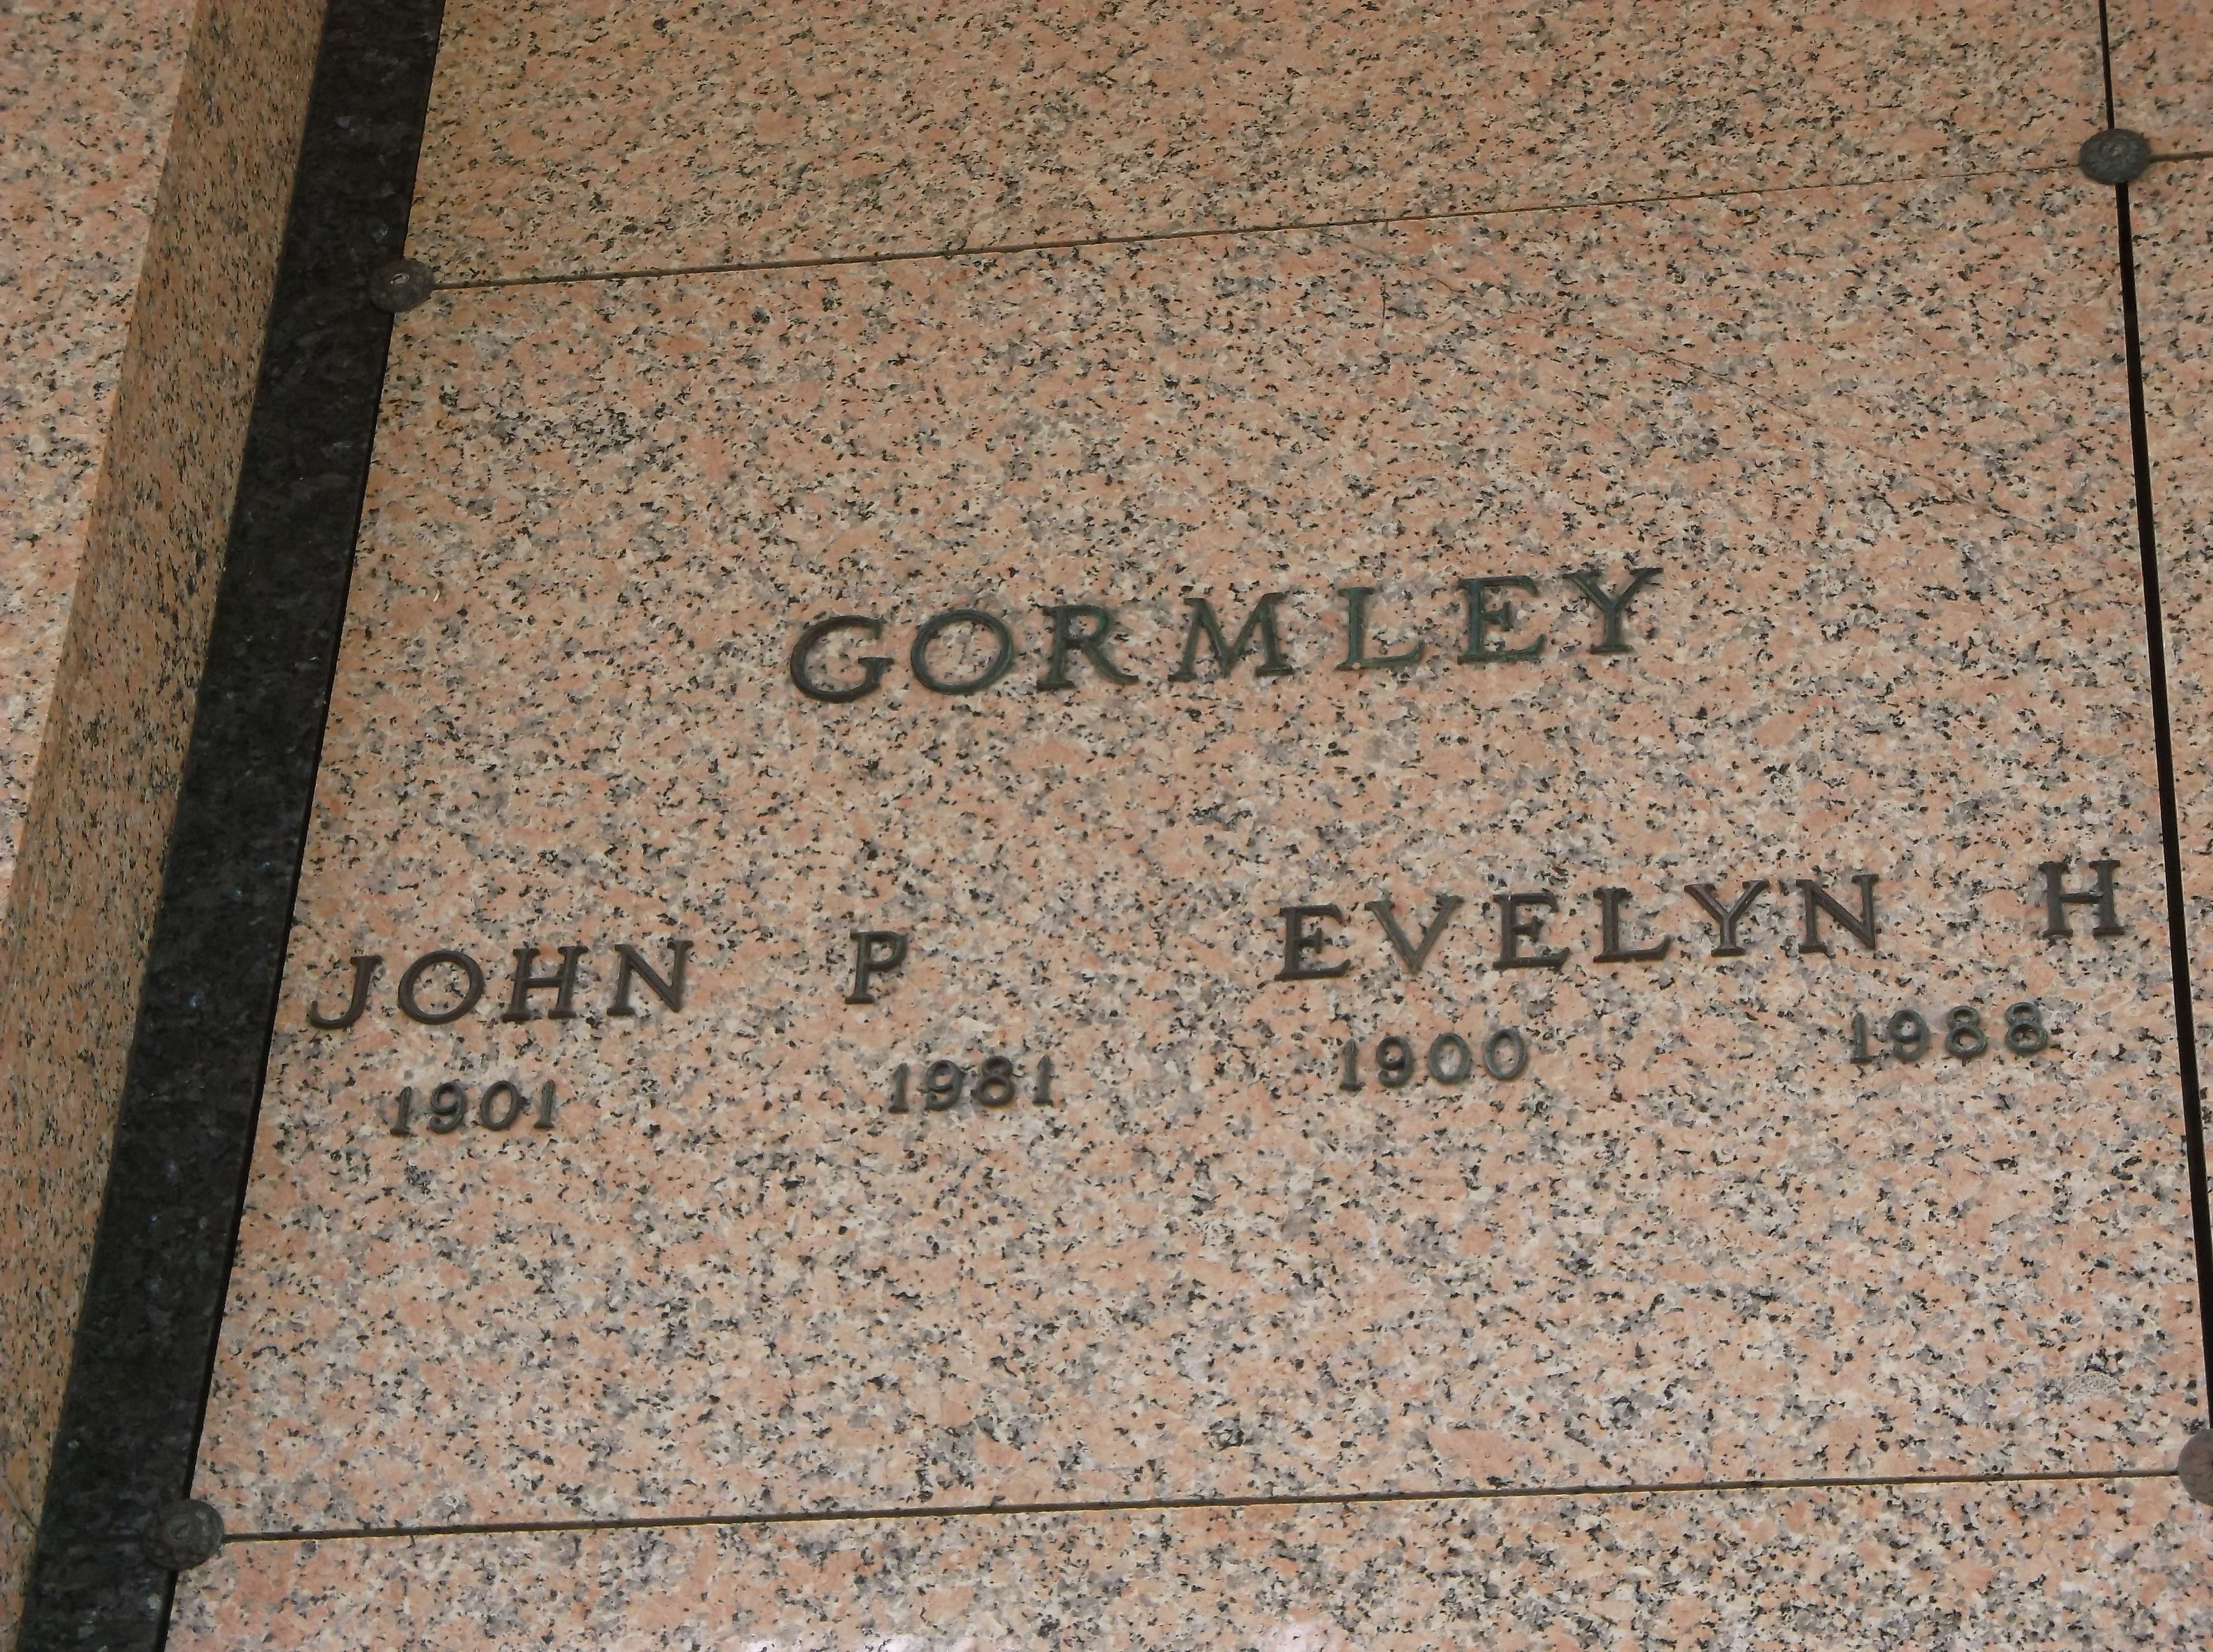 John P Gormley